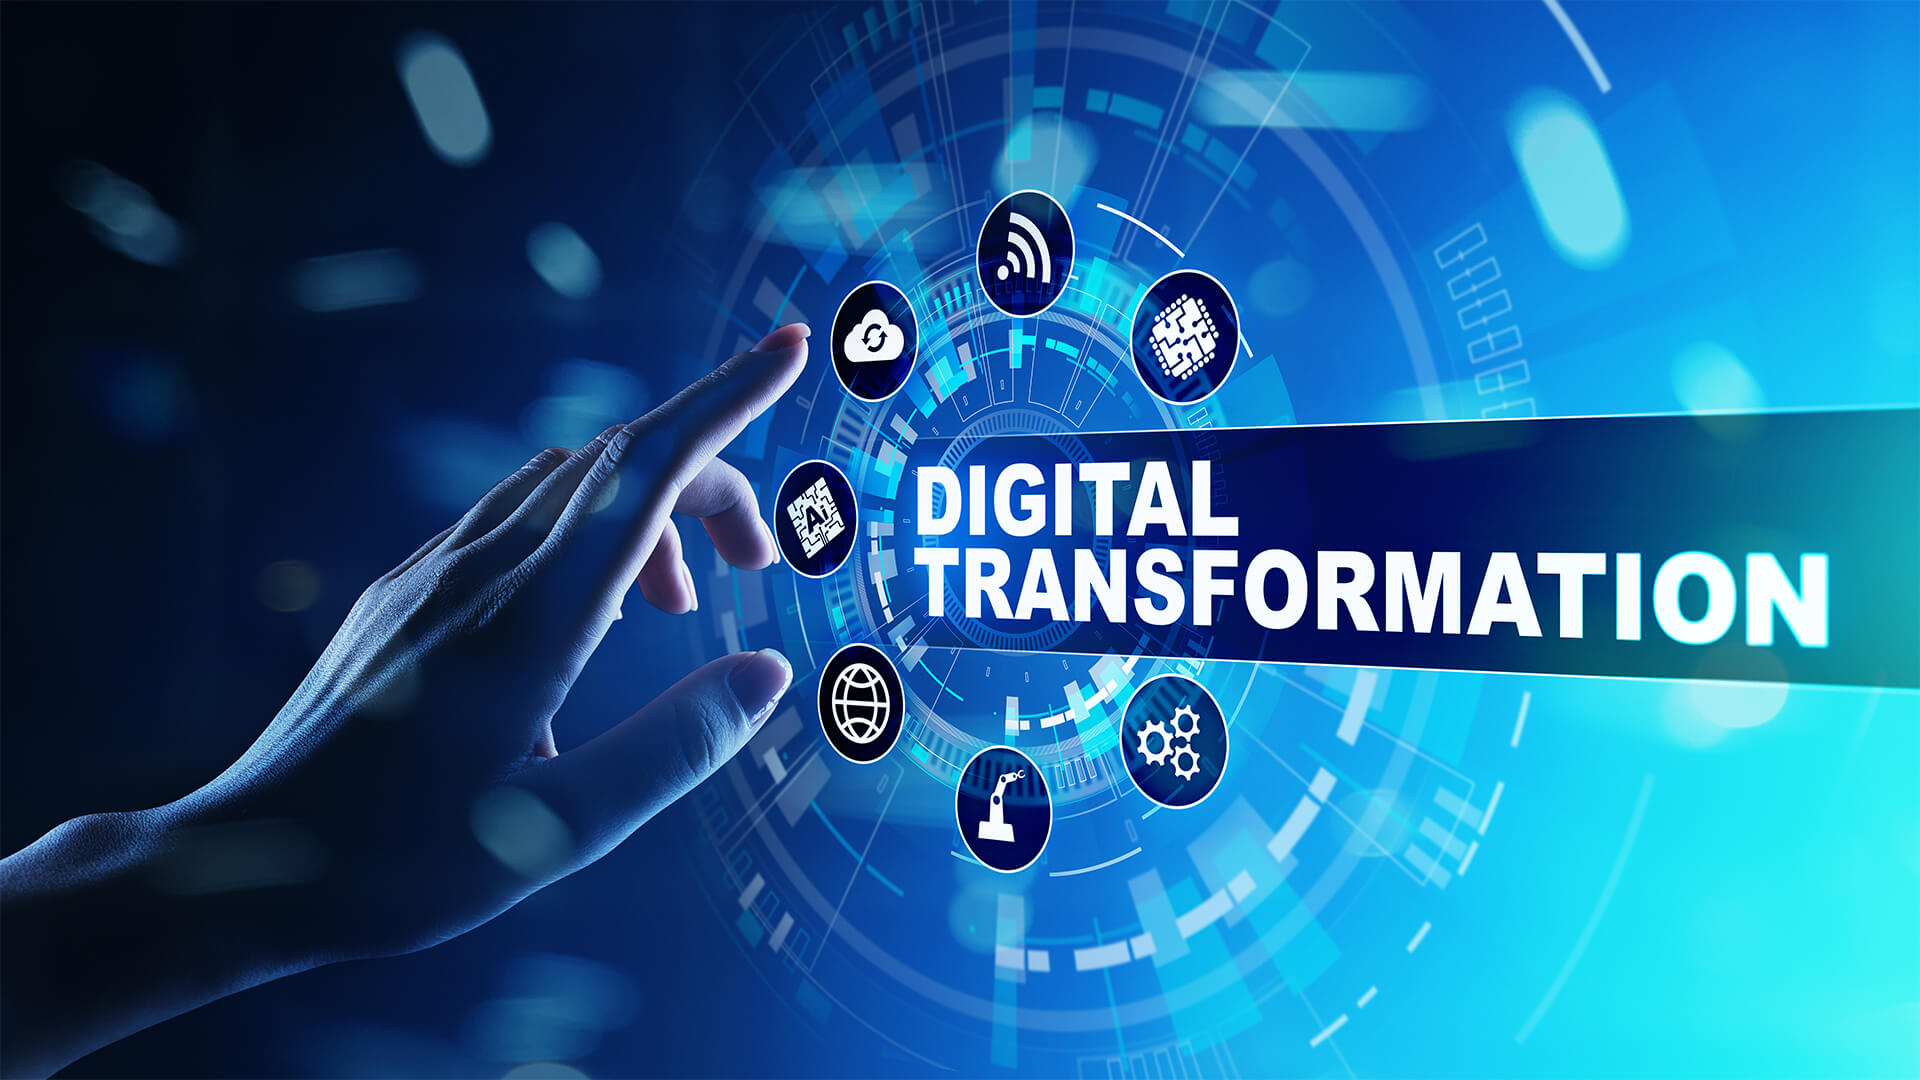 Digital Transformation Market